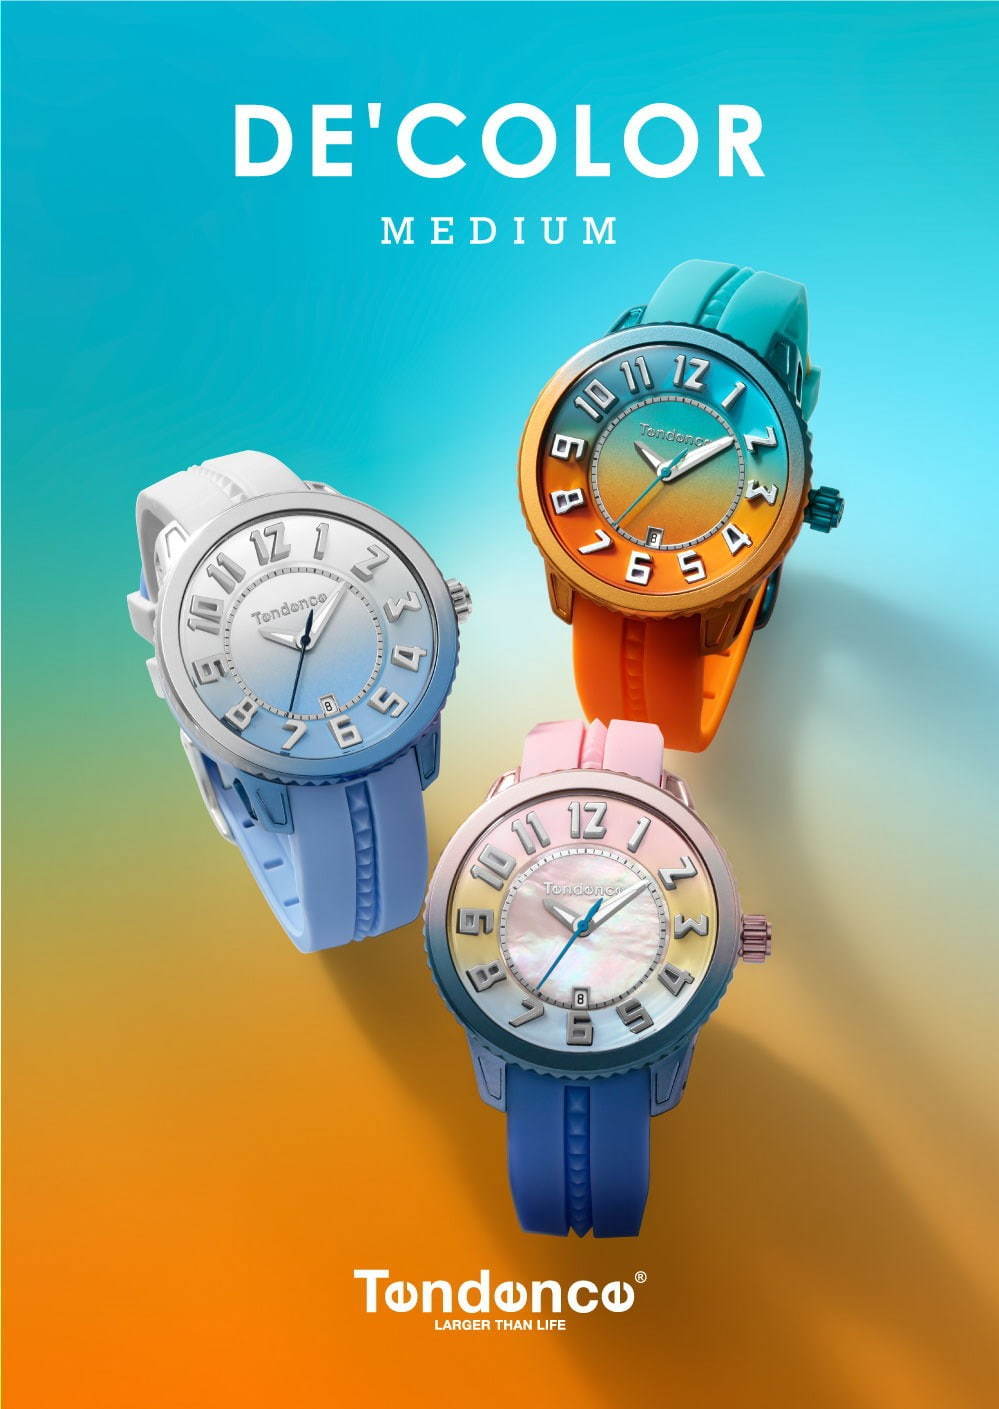 スイス時計ブランド「テンデンス」グラデーションカラーの新作腕時計